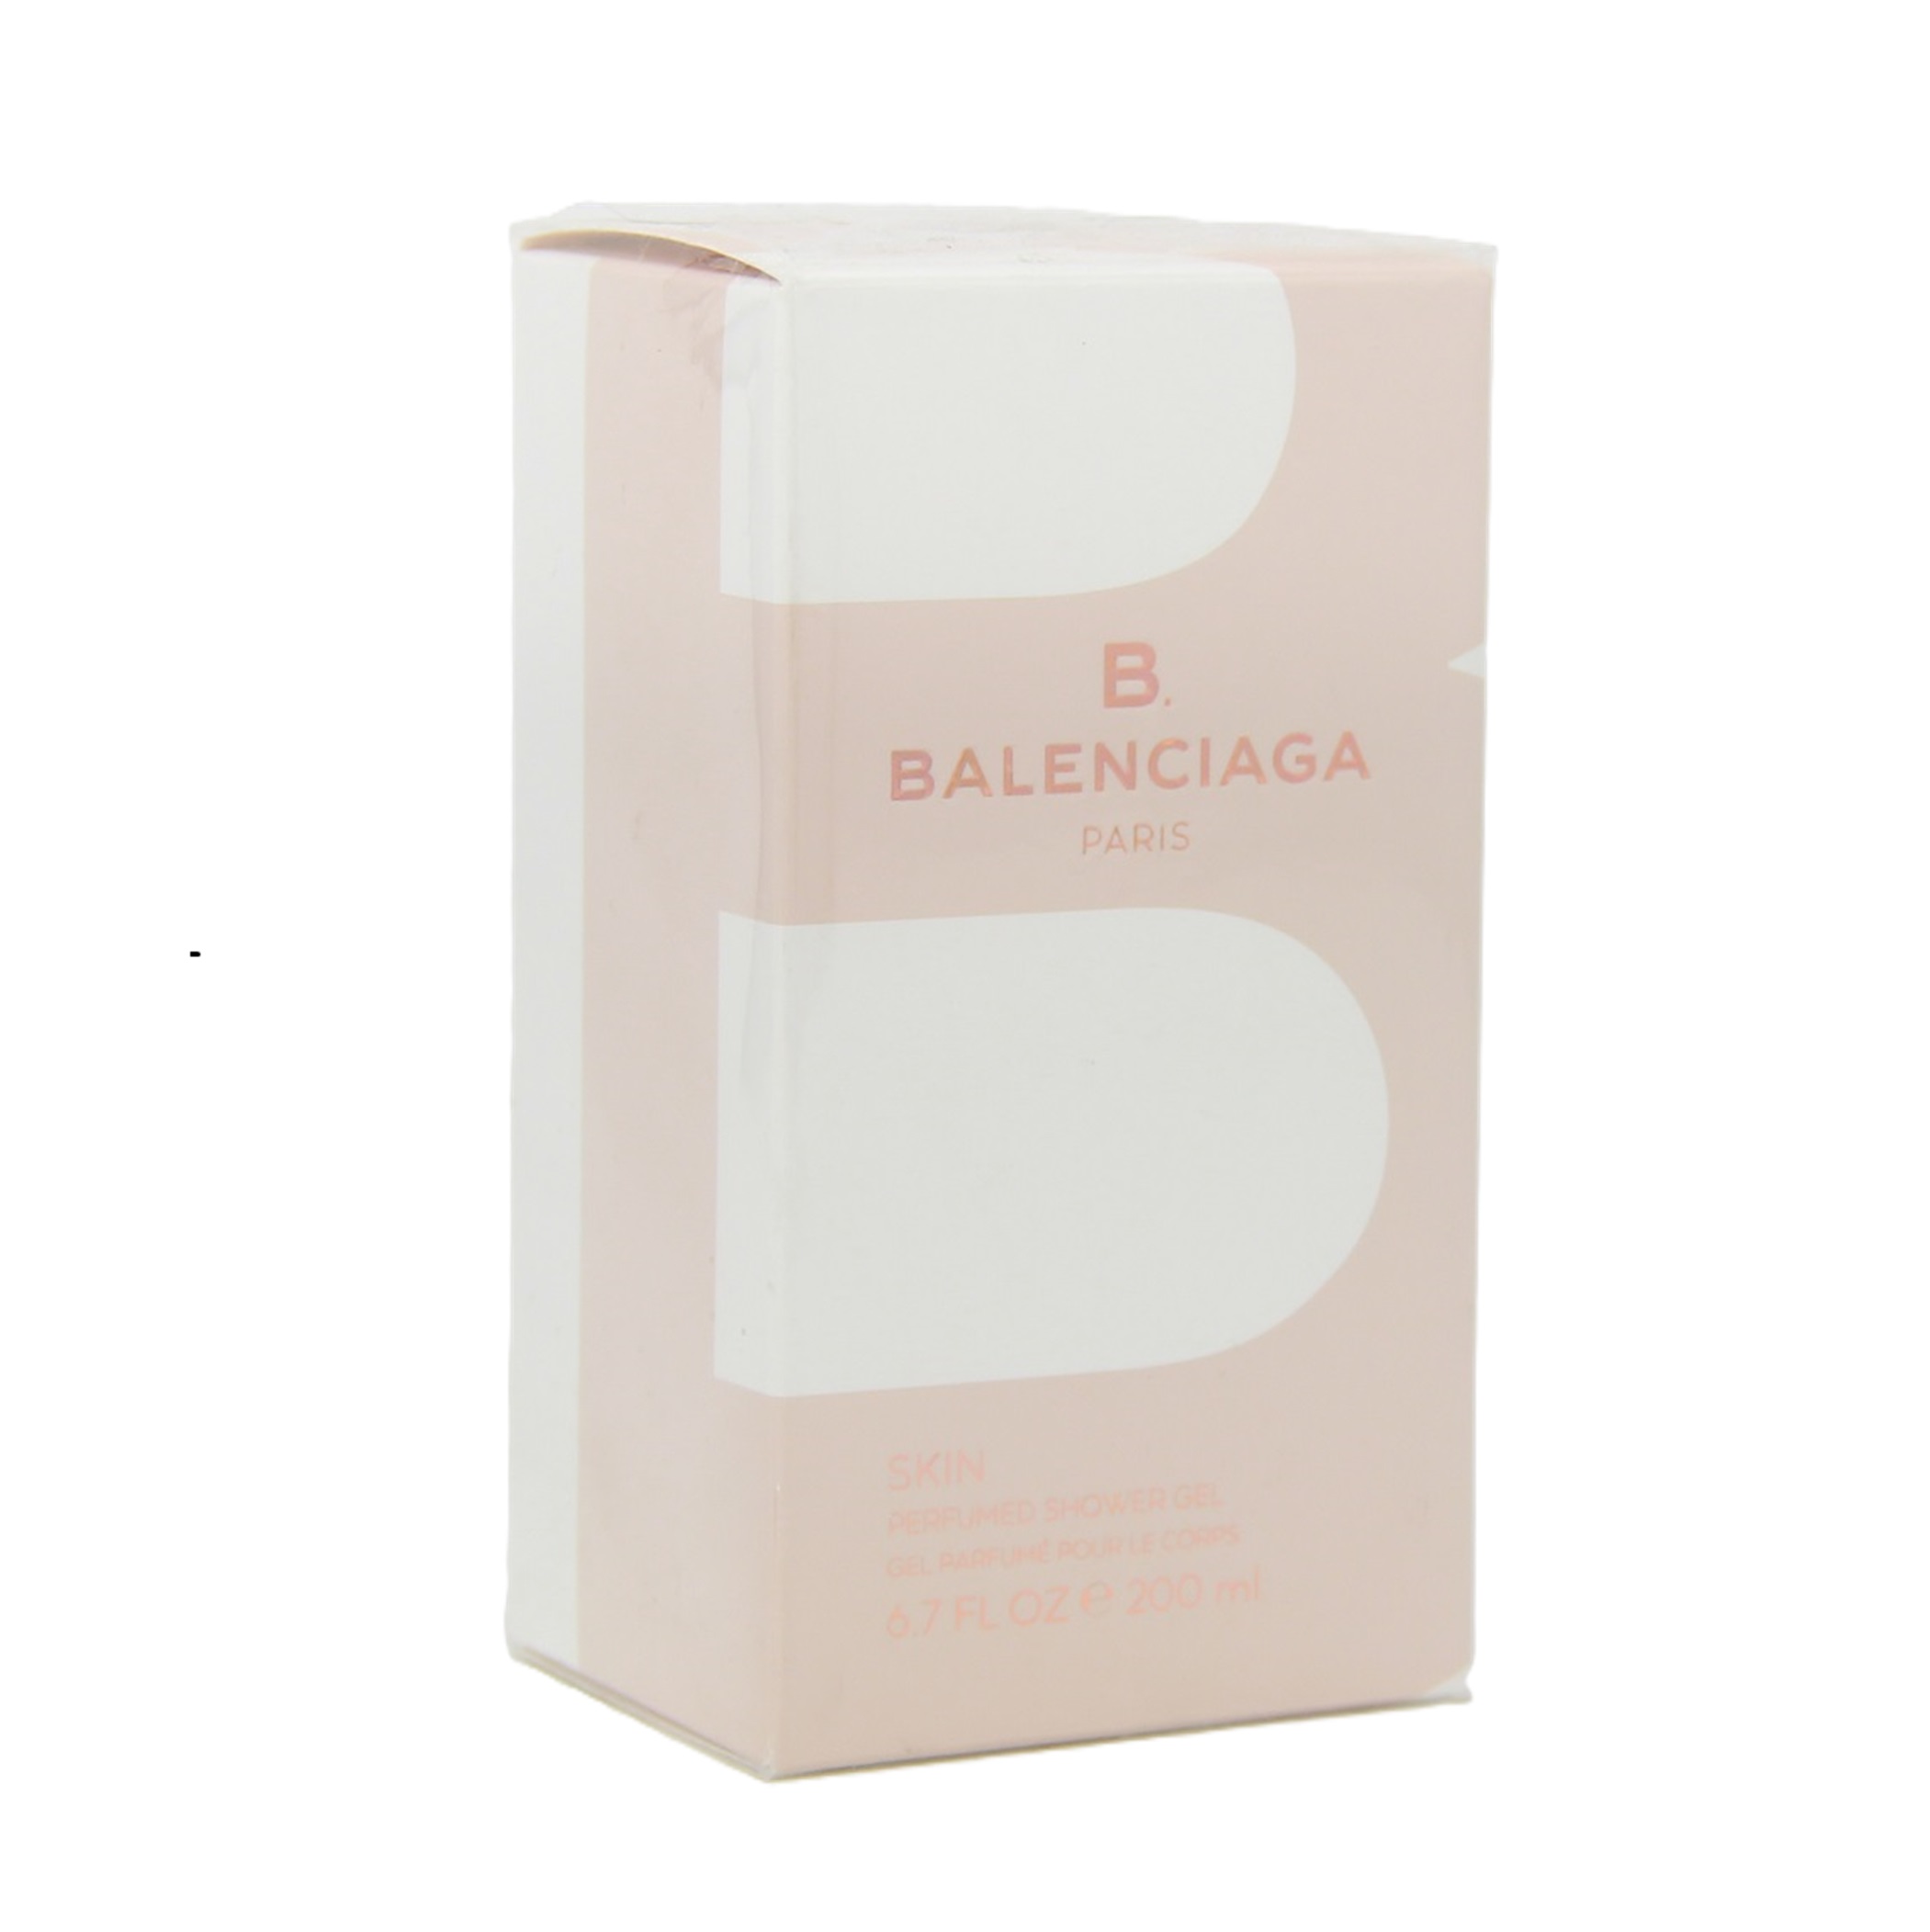 Balenciaga B. Skin Perfumed Shower Gel 200ml